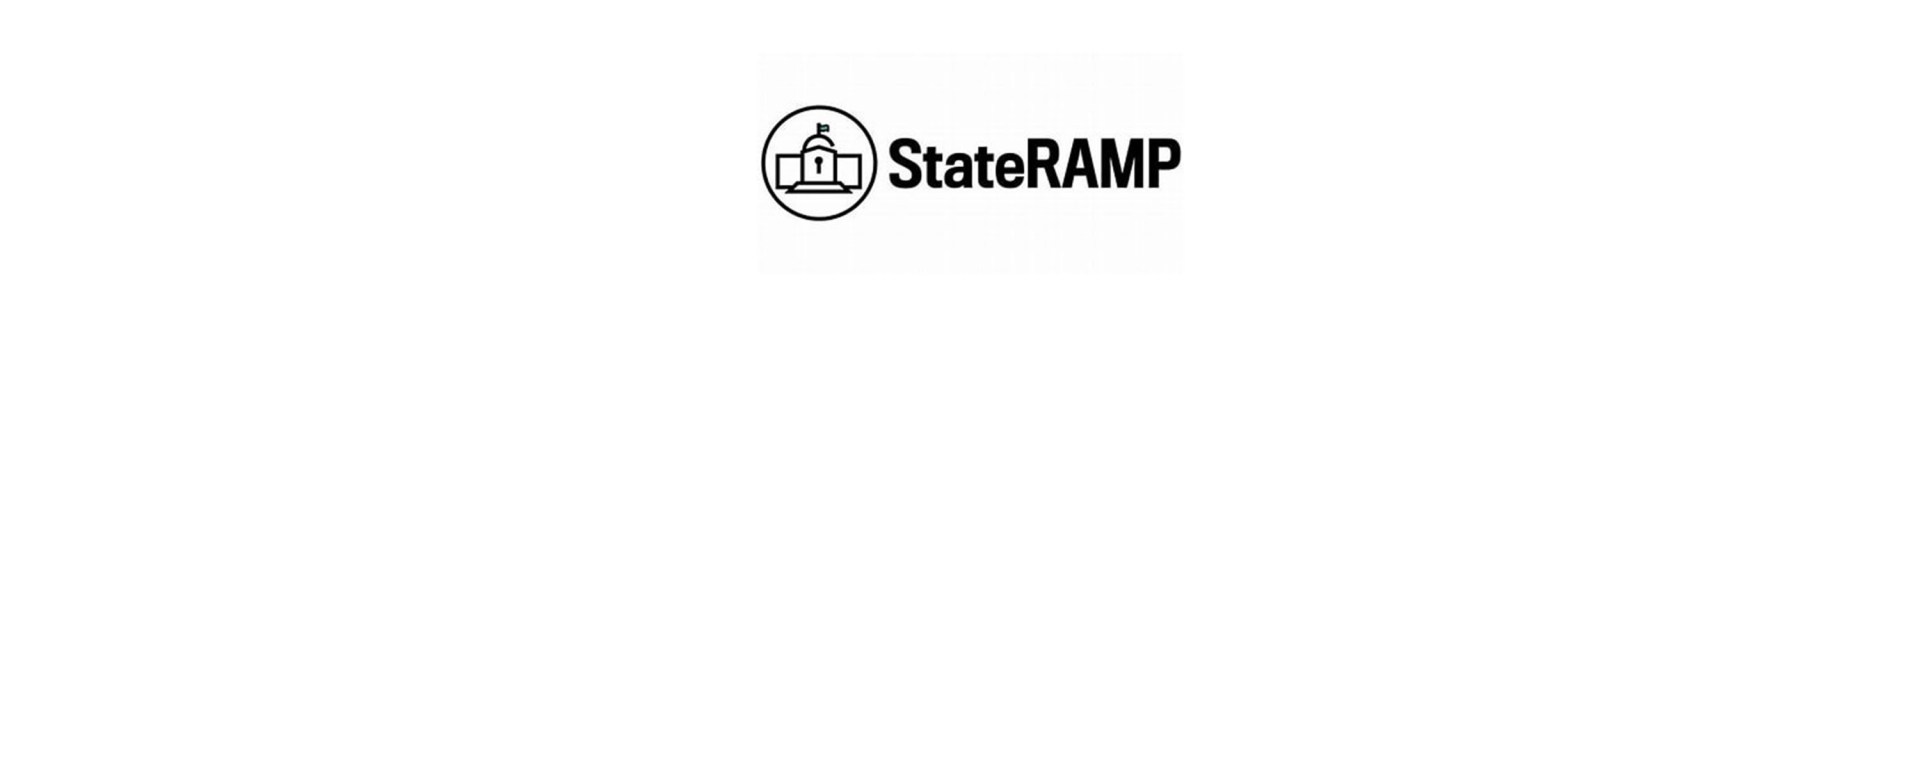 StateRAMP Compliance Checklist